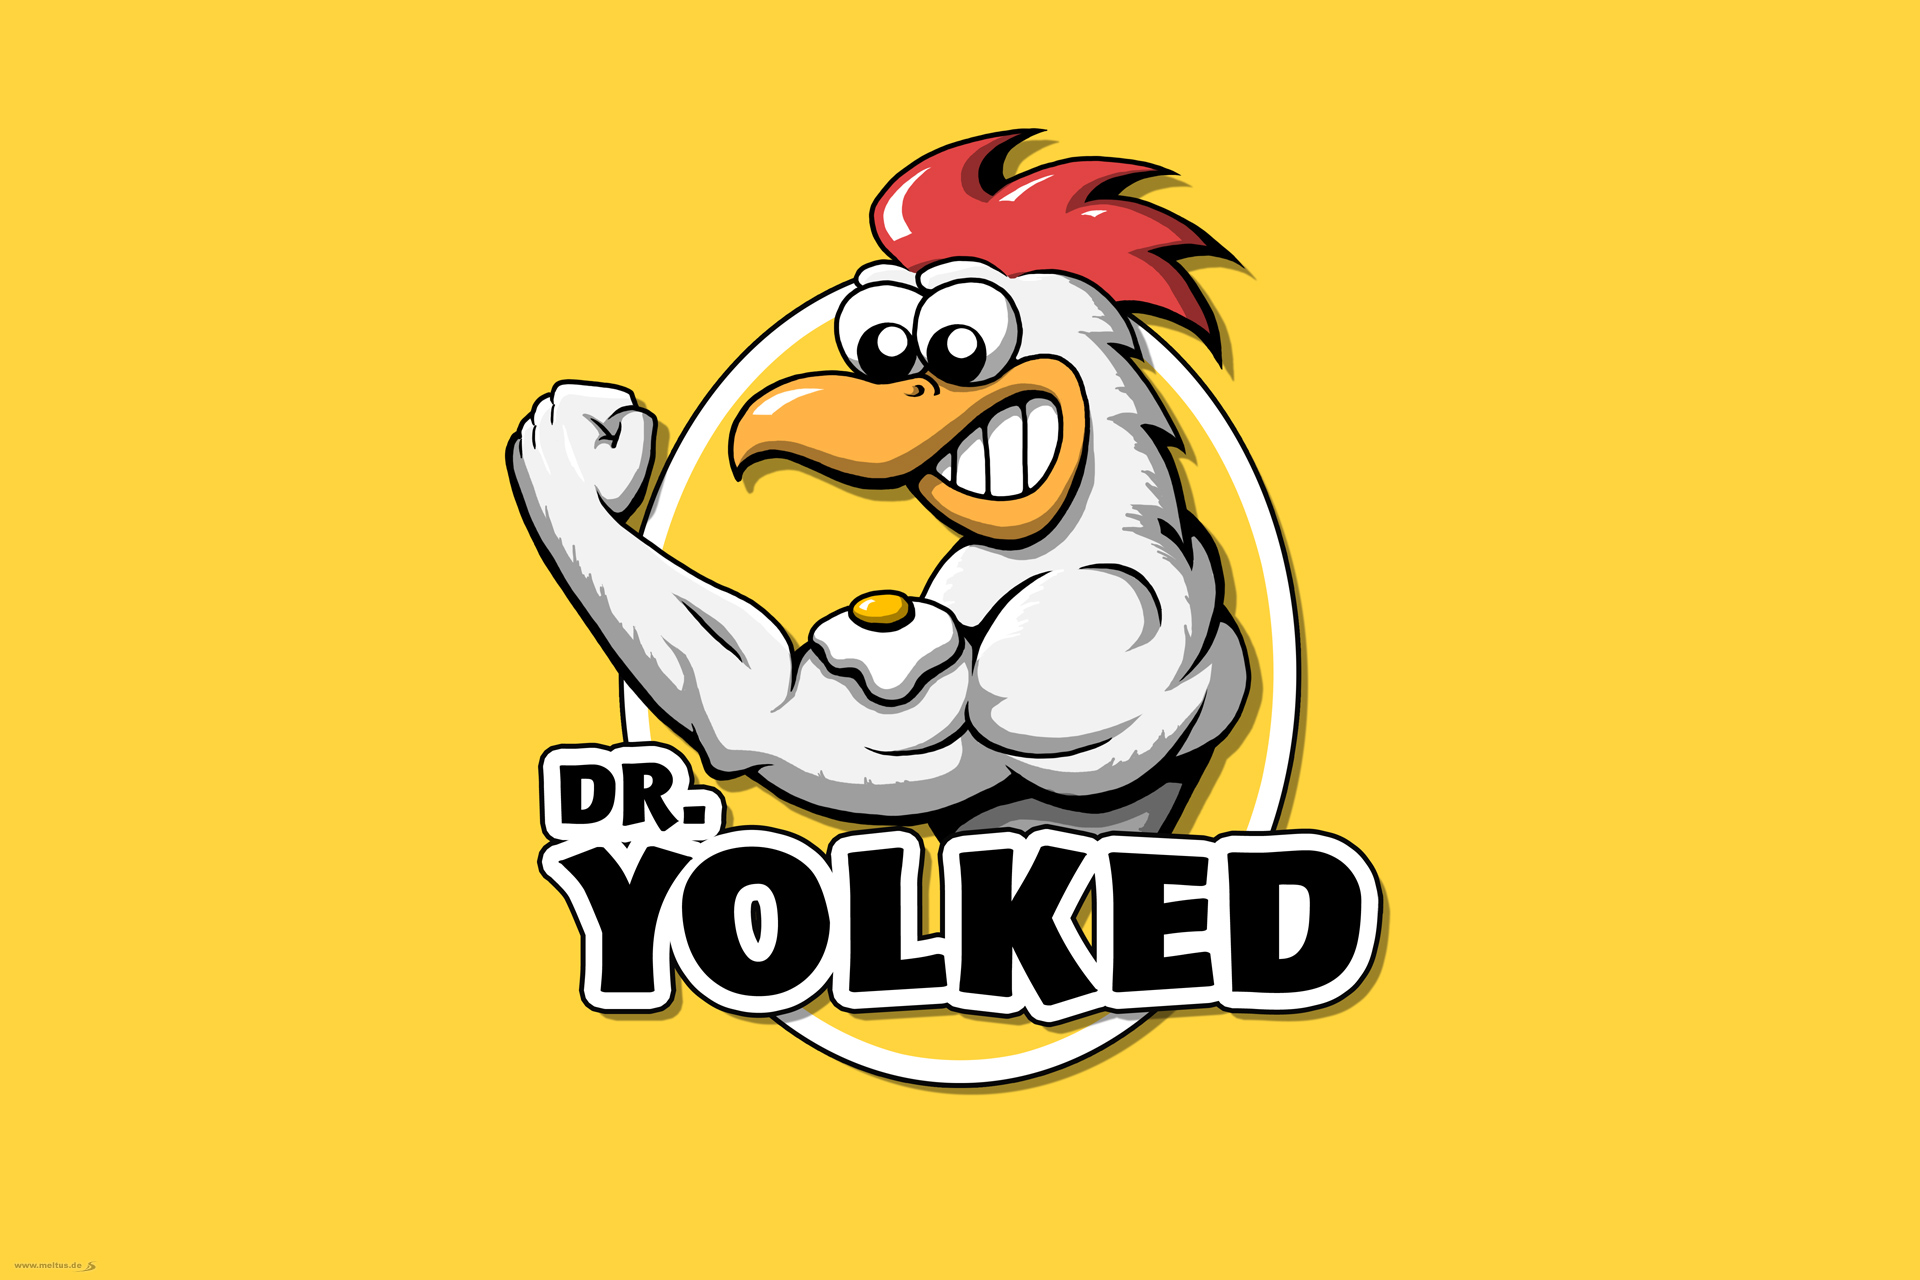 2D Cartoon: Dr Yolked Logo - Dr. Yolked, Cartoon Hahn, Logo- & Maskottchenentwurf.